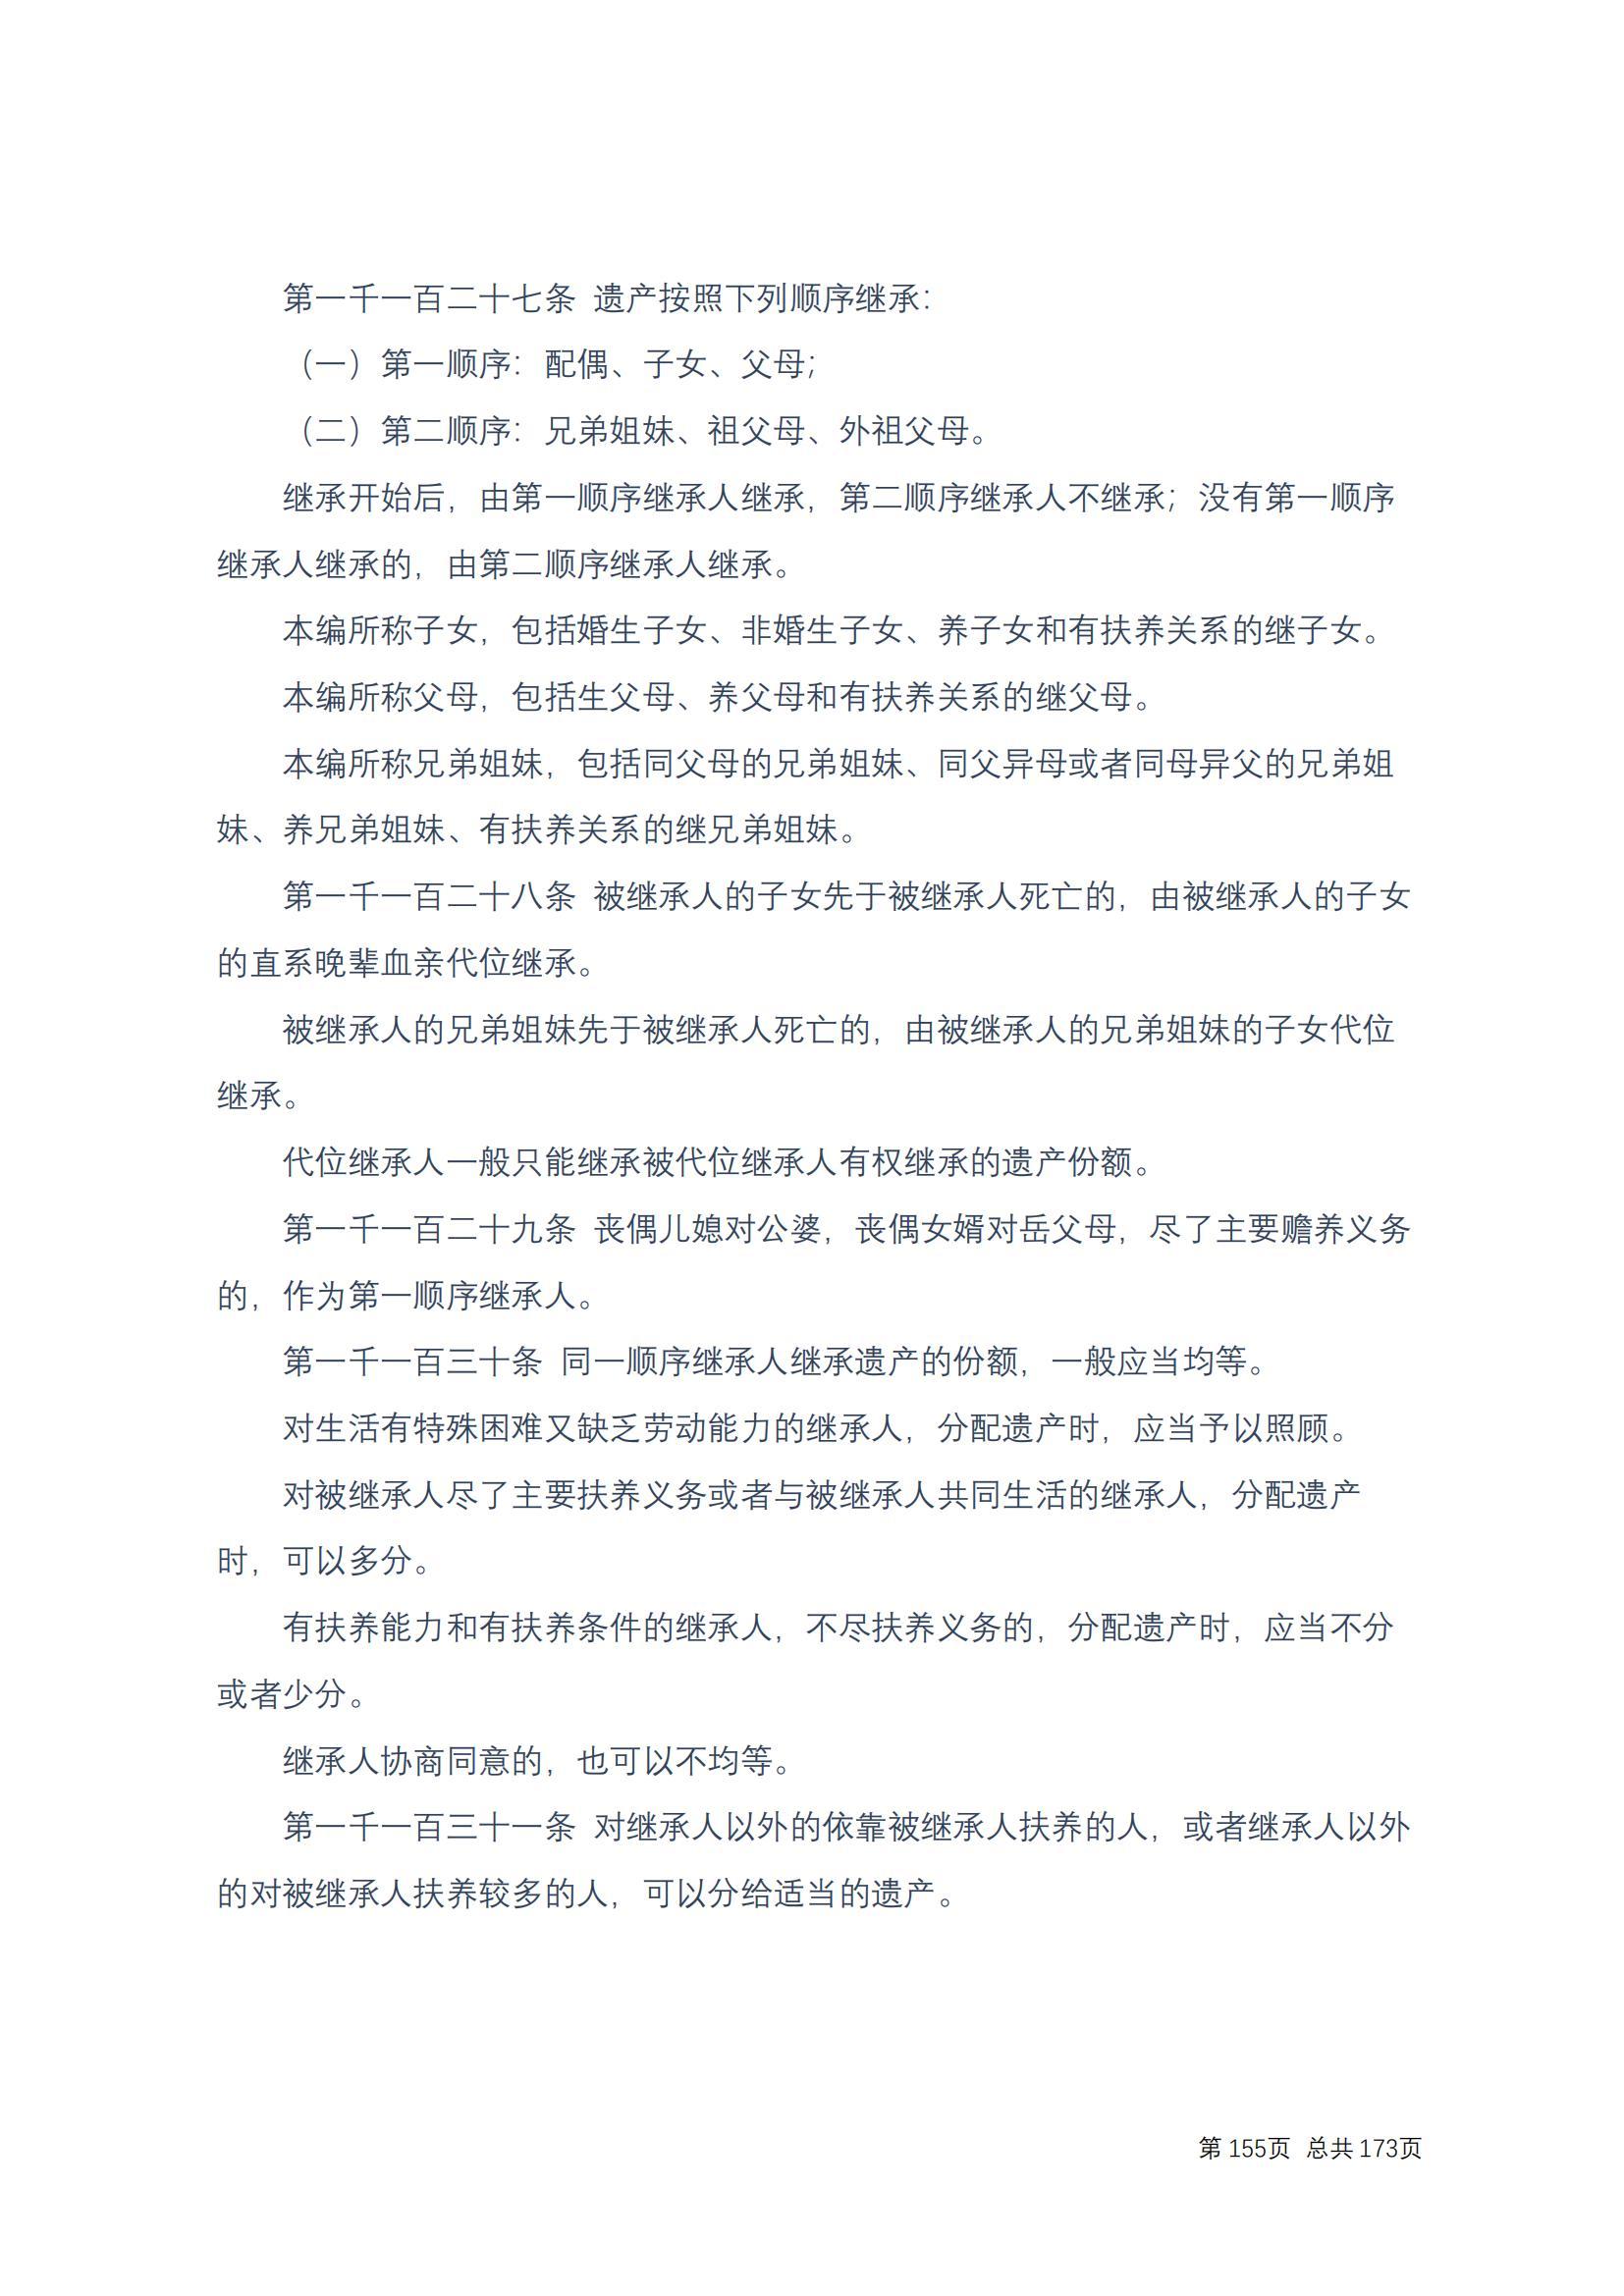 中华人民共和国民法典 修改过_154